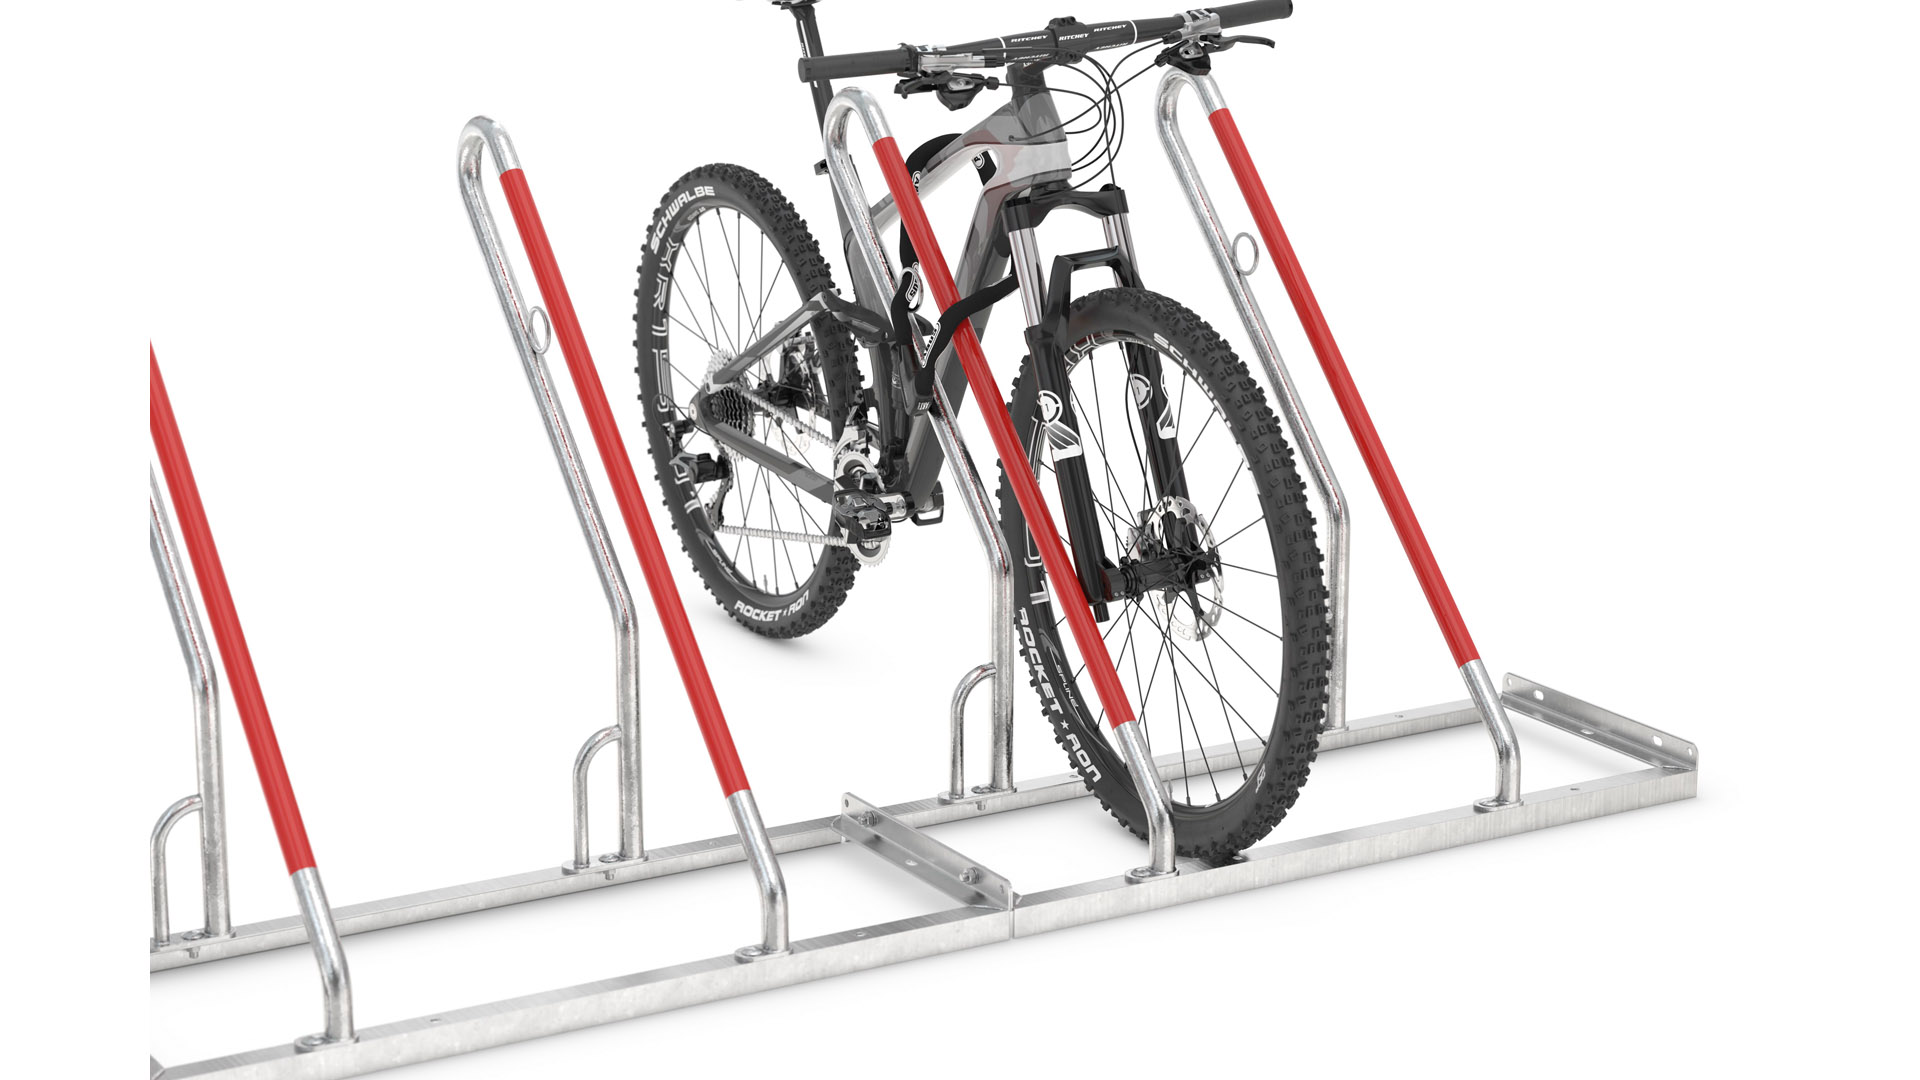 Fahrradständer - Anlehnparker, Stahl verzinkt, einseitige Radeinstellung, Radabstand 500 mm, Tiefstellung, 2er Stand, Länge 1000 mm